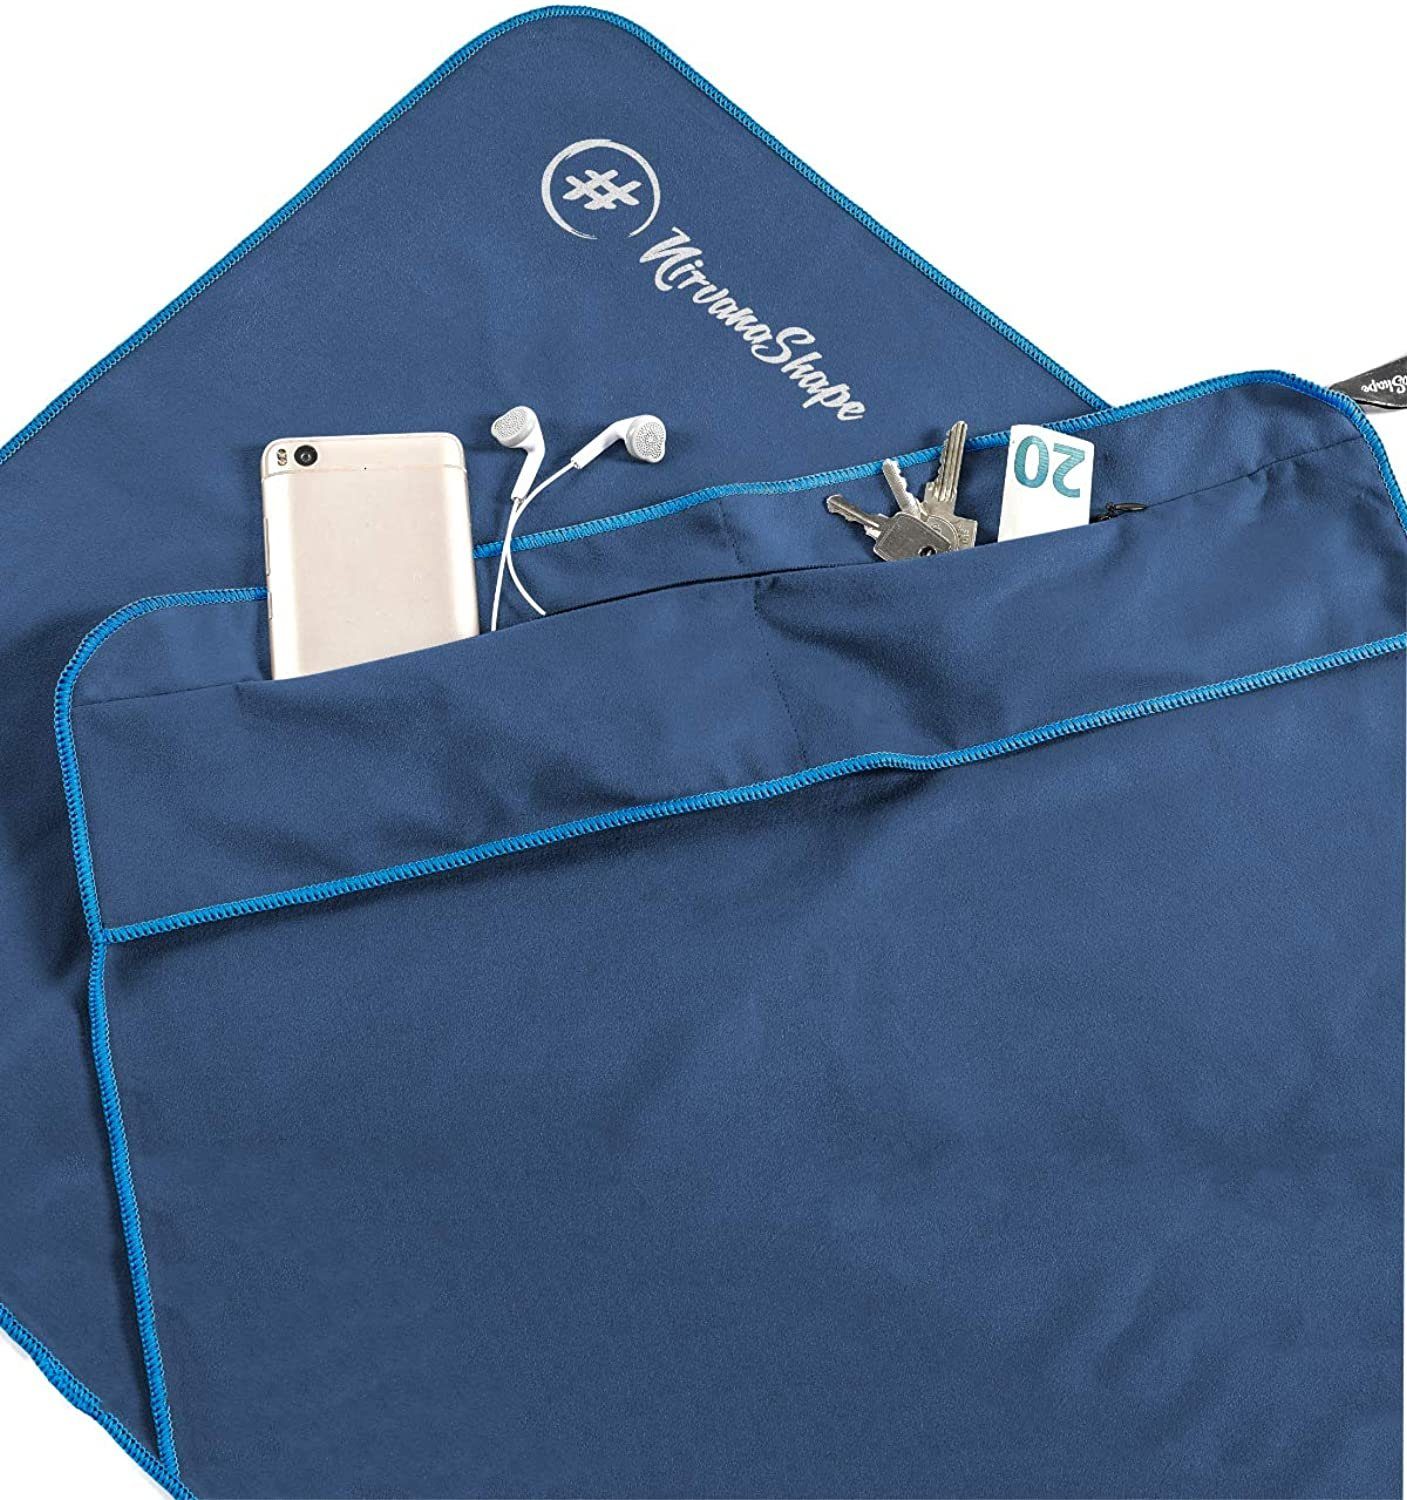 NirvanaShape Sporthandtuch Fitness-Handtuch mit Magnet-Clip, Mikrofaser Sporthandtuch, Microfaser, 2x Reißverschlusstaschen & Funktionaler Geräteüberzug, Ultra-Saugfähig Blau / Blauer Rand | Sporthandtücher